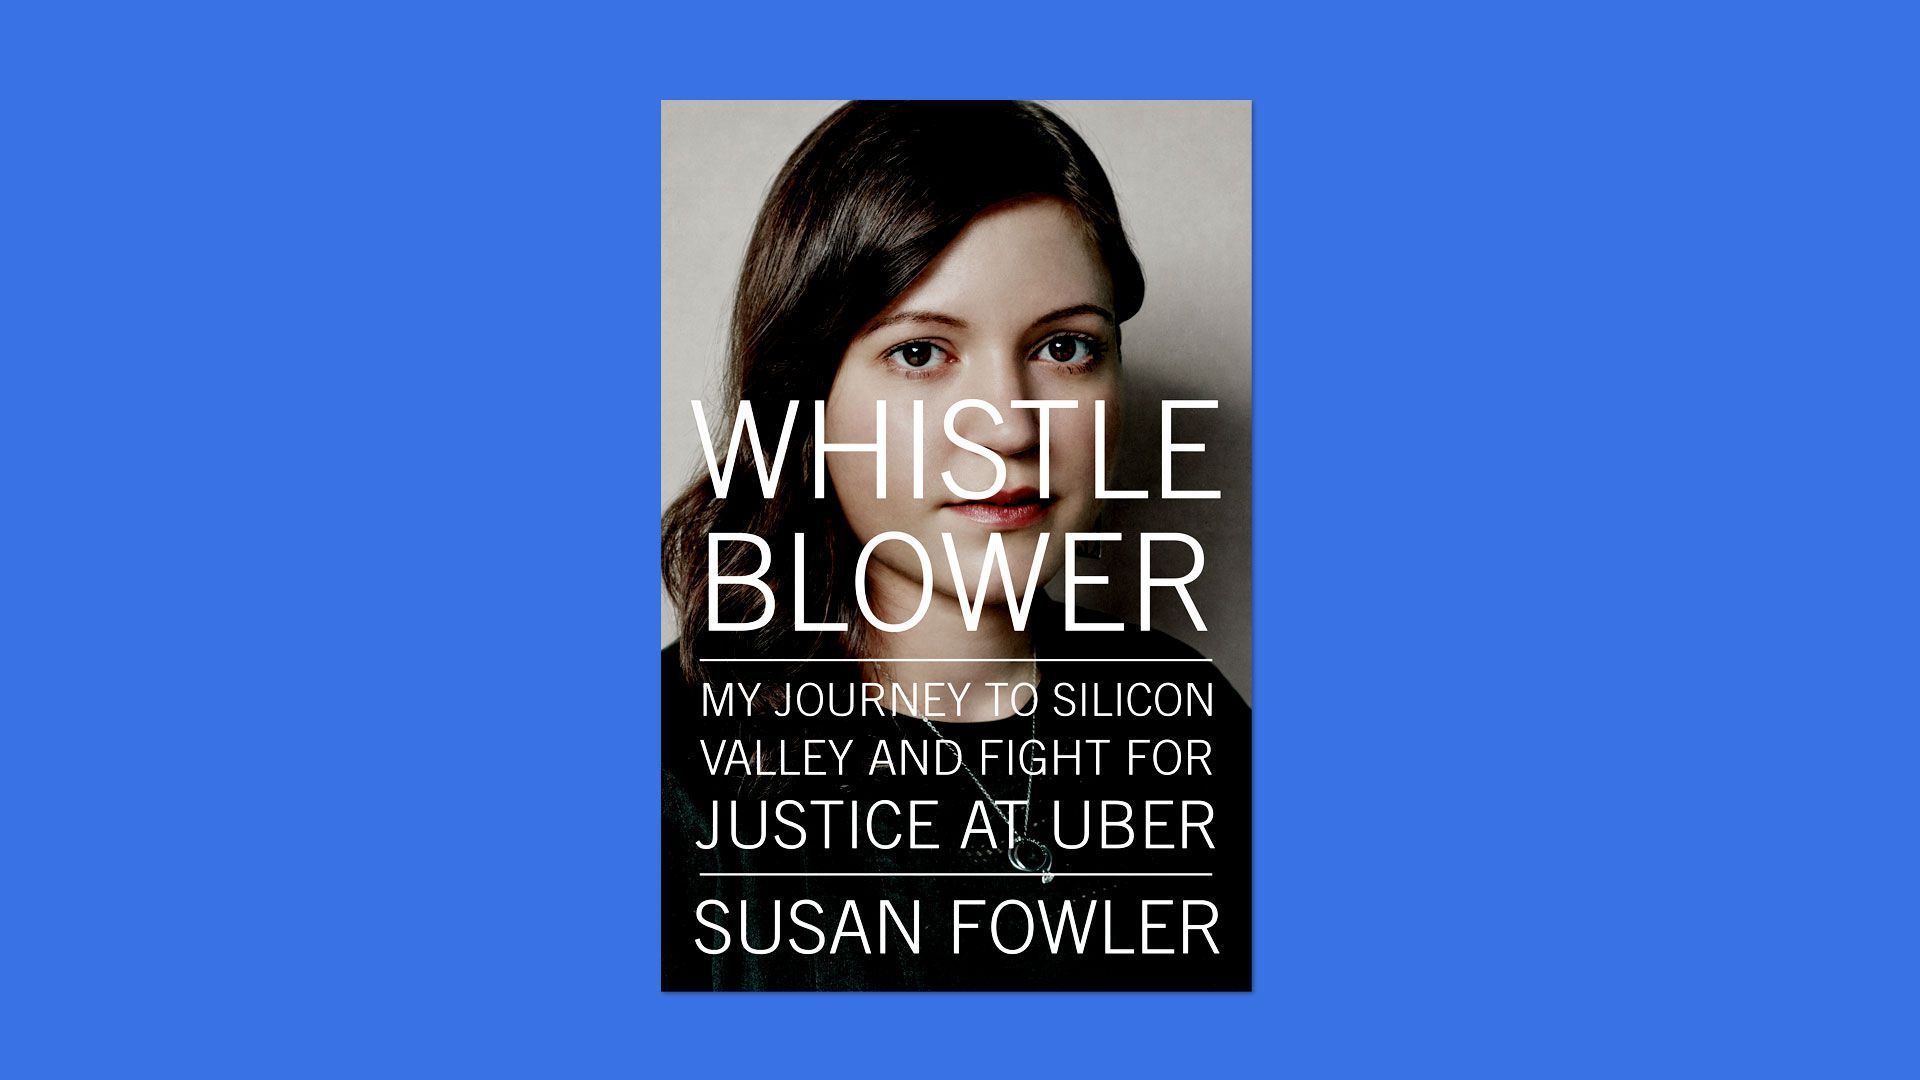 "Whistleblower" book cover